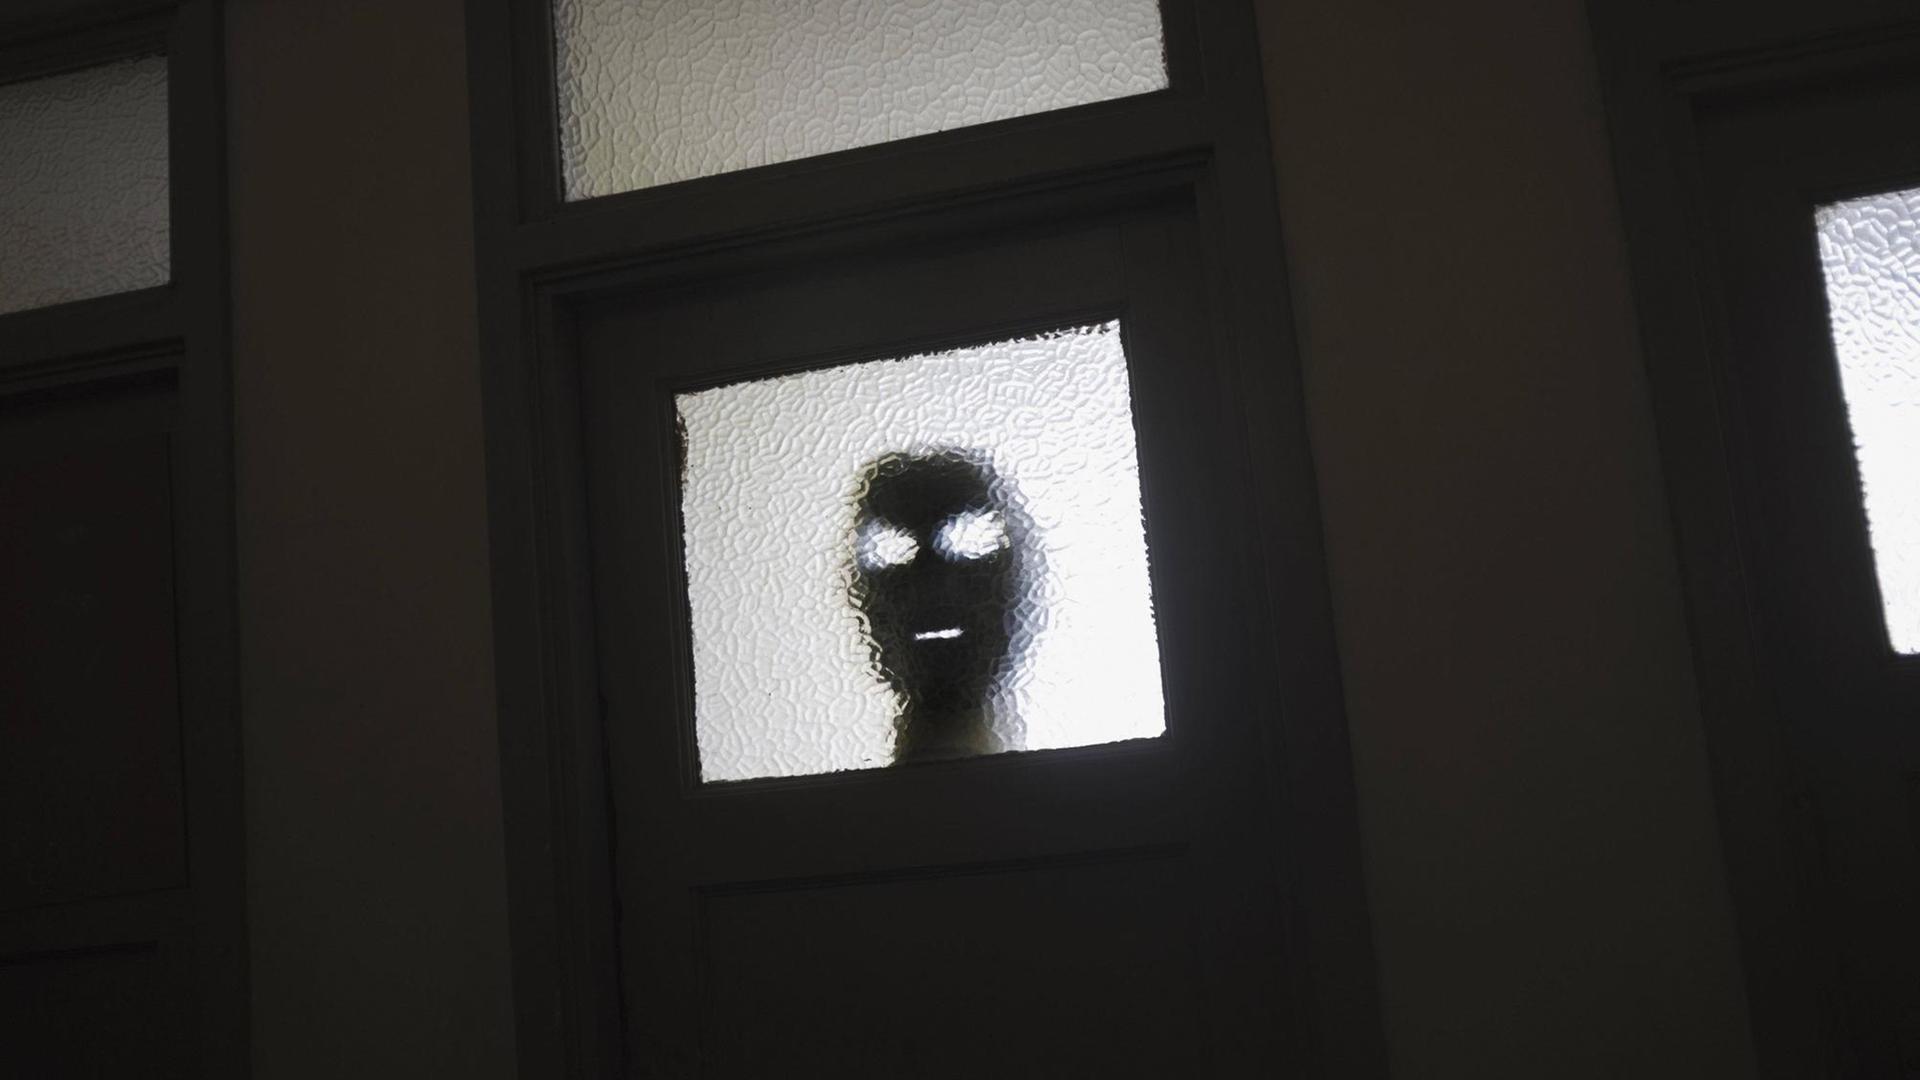 Eine dunkle Maske lauert hinter einem Türfenster.